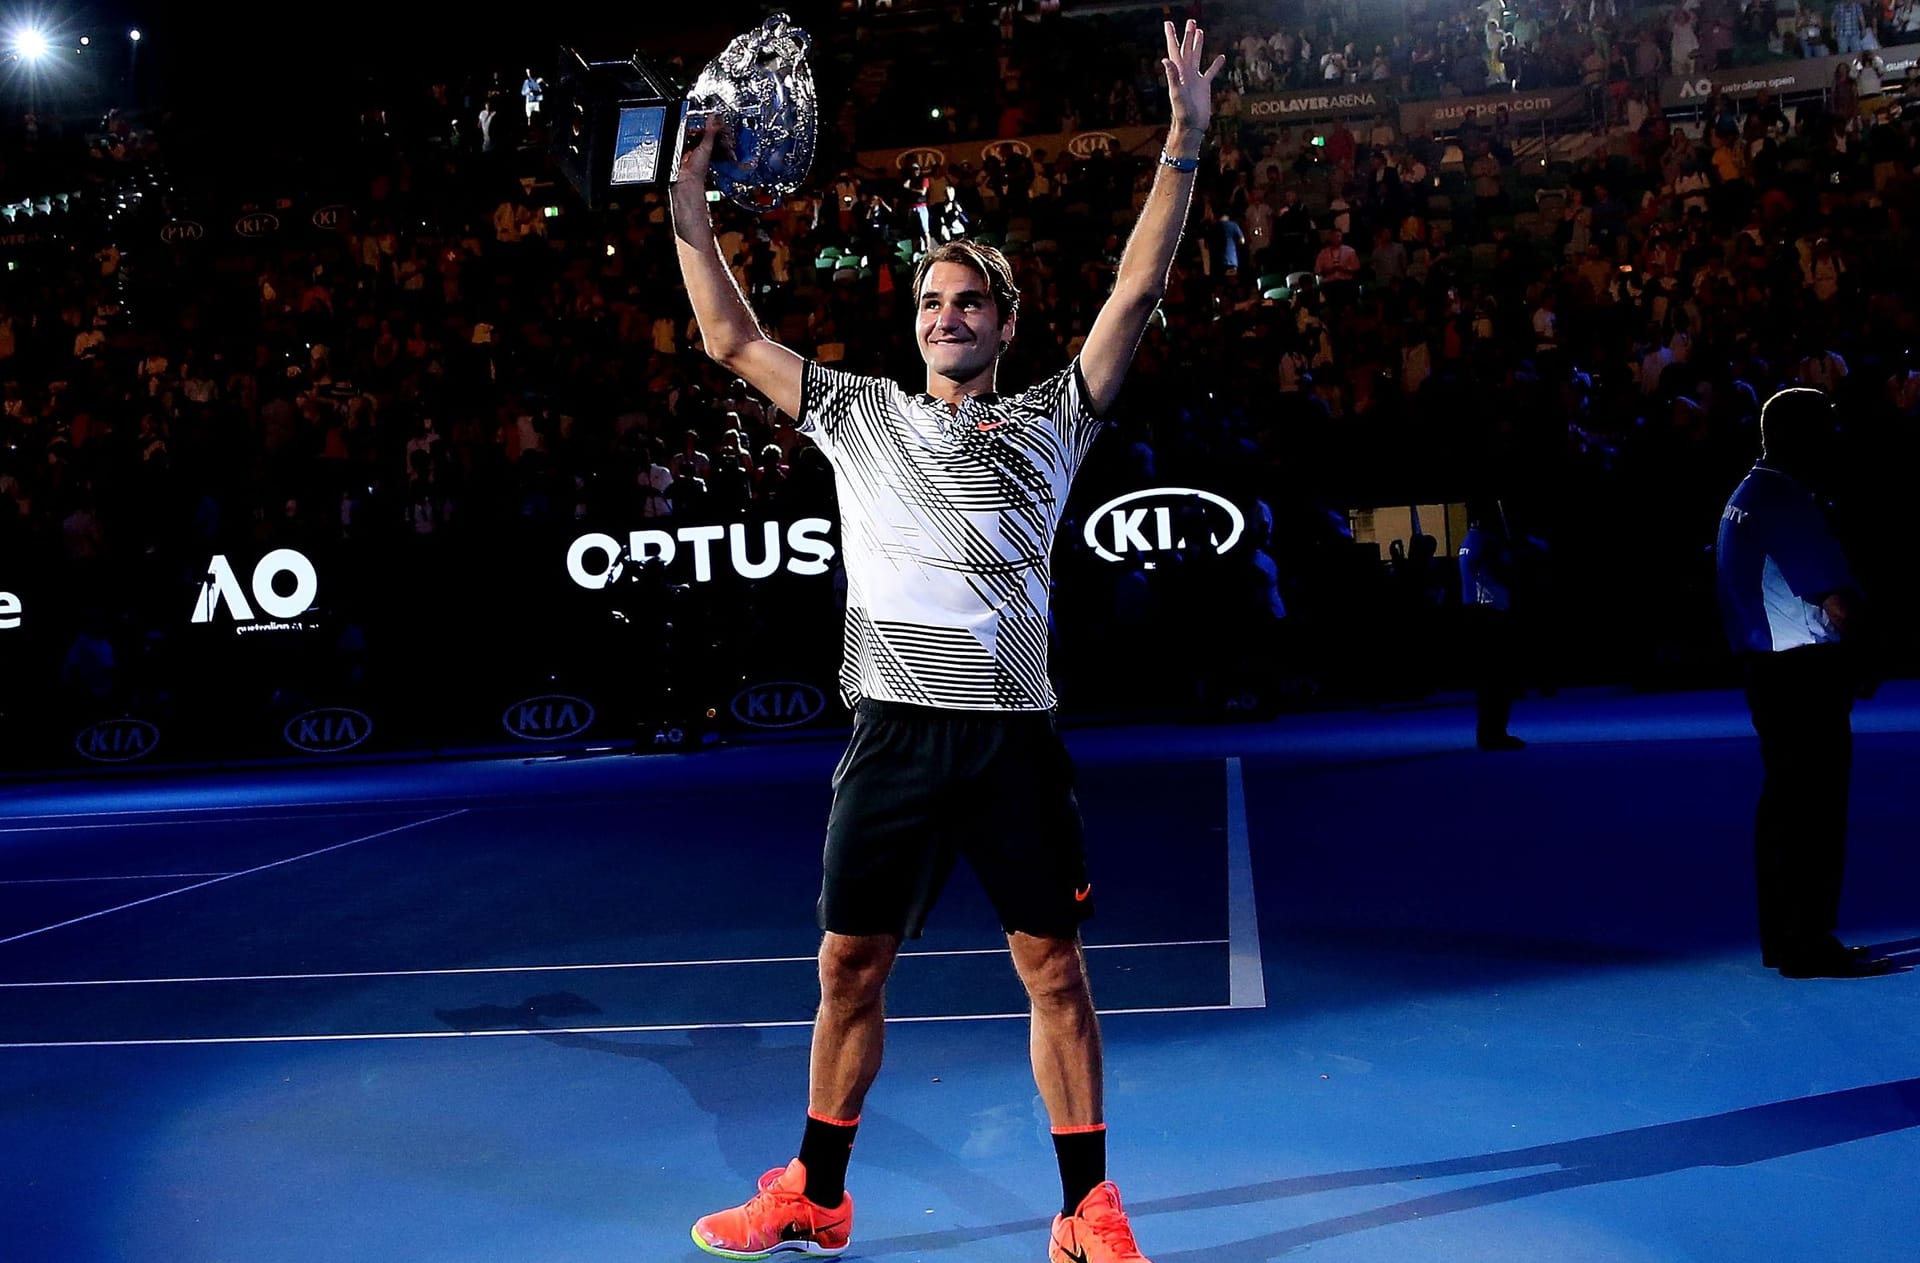 Australian Open 2017: Den Großteil der Saison 2016 hat Federer mit einer Knieverletzung verpasst. Bei den Australian Open 2017 gibt er sein Comeback auf der großen Bühne. Keiner erwartet, dass es der alternde Star weit schafft. Doch Federer erreicht das Finale. Trotz Rückstandes im fünften Satz kann er die Partie gegen seinen ewigen Rivalen Rafael Nadal noch drehen und gewinnt seinen 18. Grand Slam.